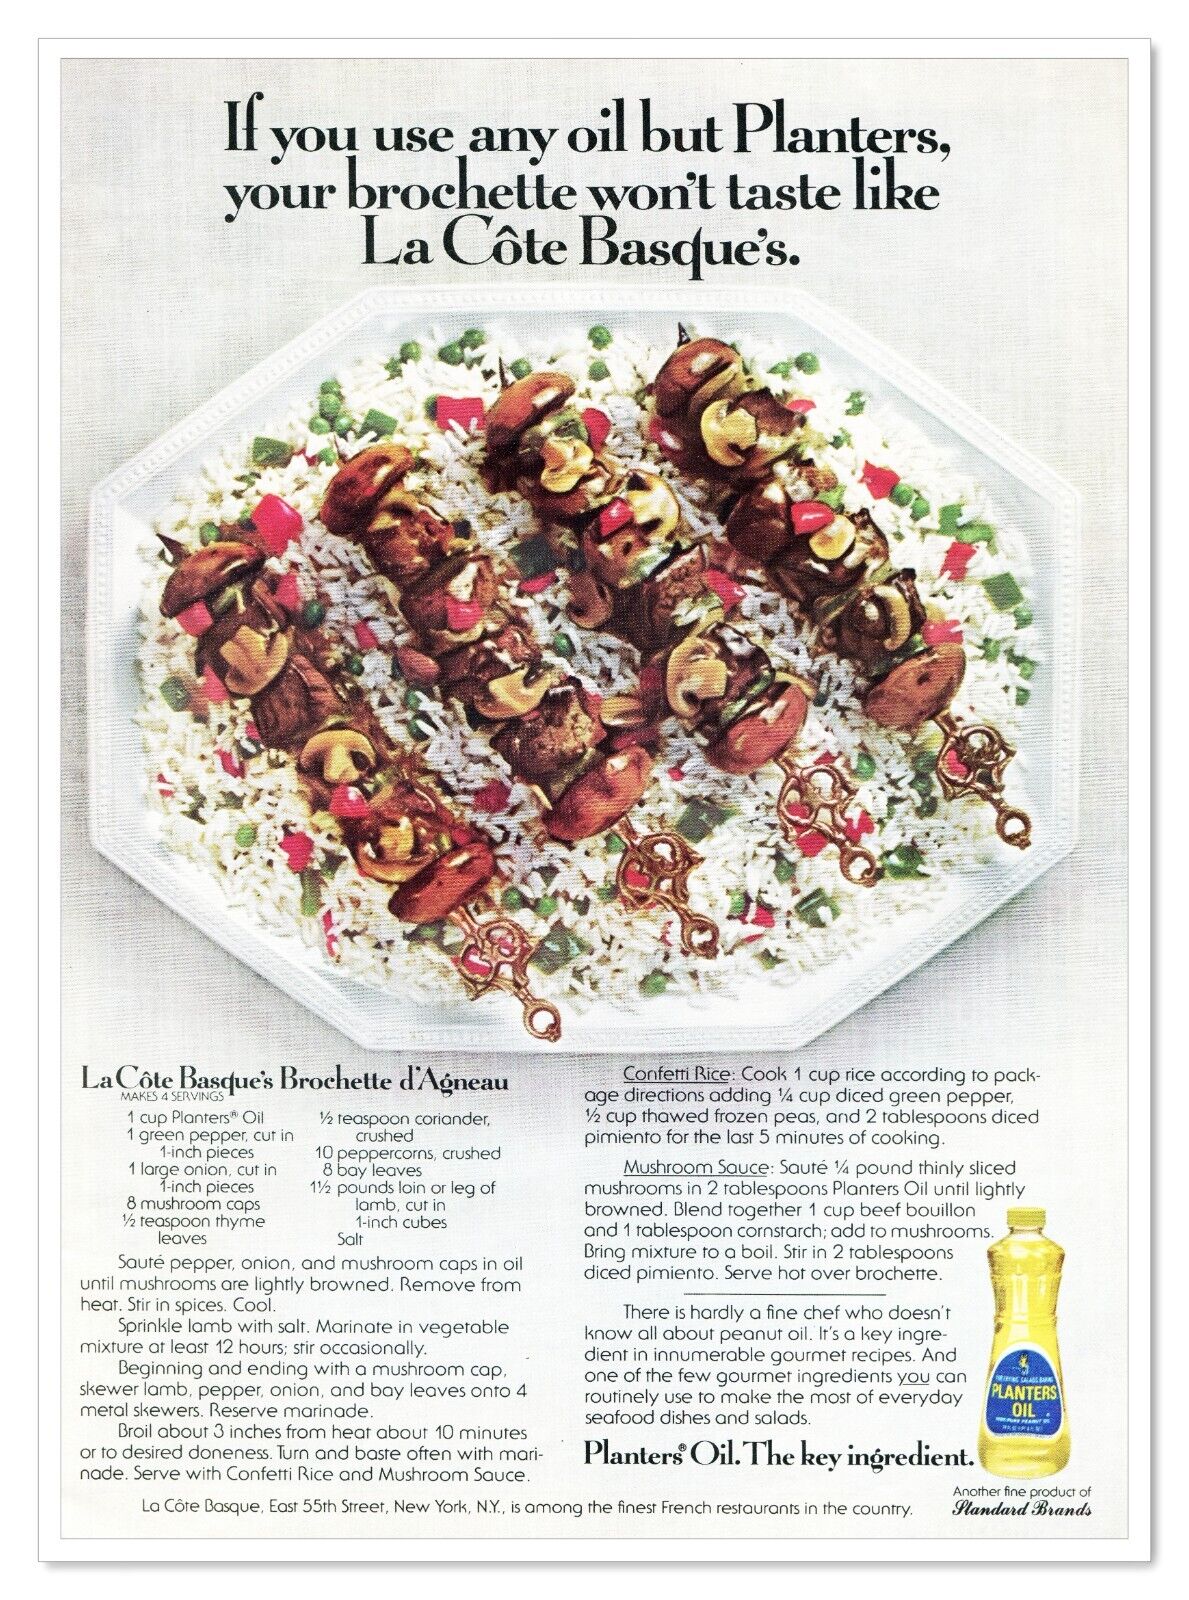 Planters Oil La Cote Basque Brochette Recipe Vintage 1976 Full-Page Magazine Ad